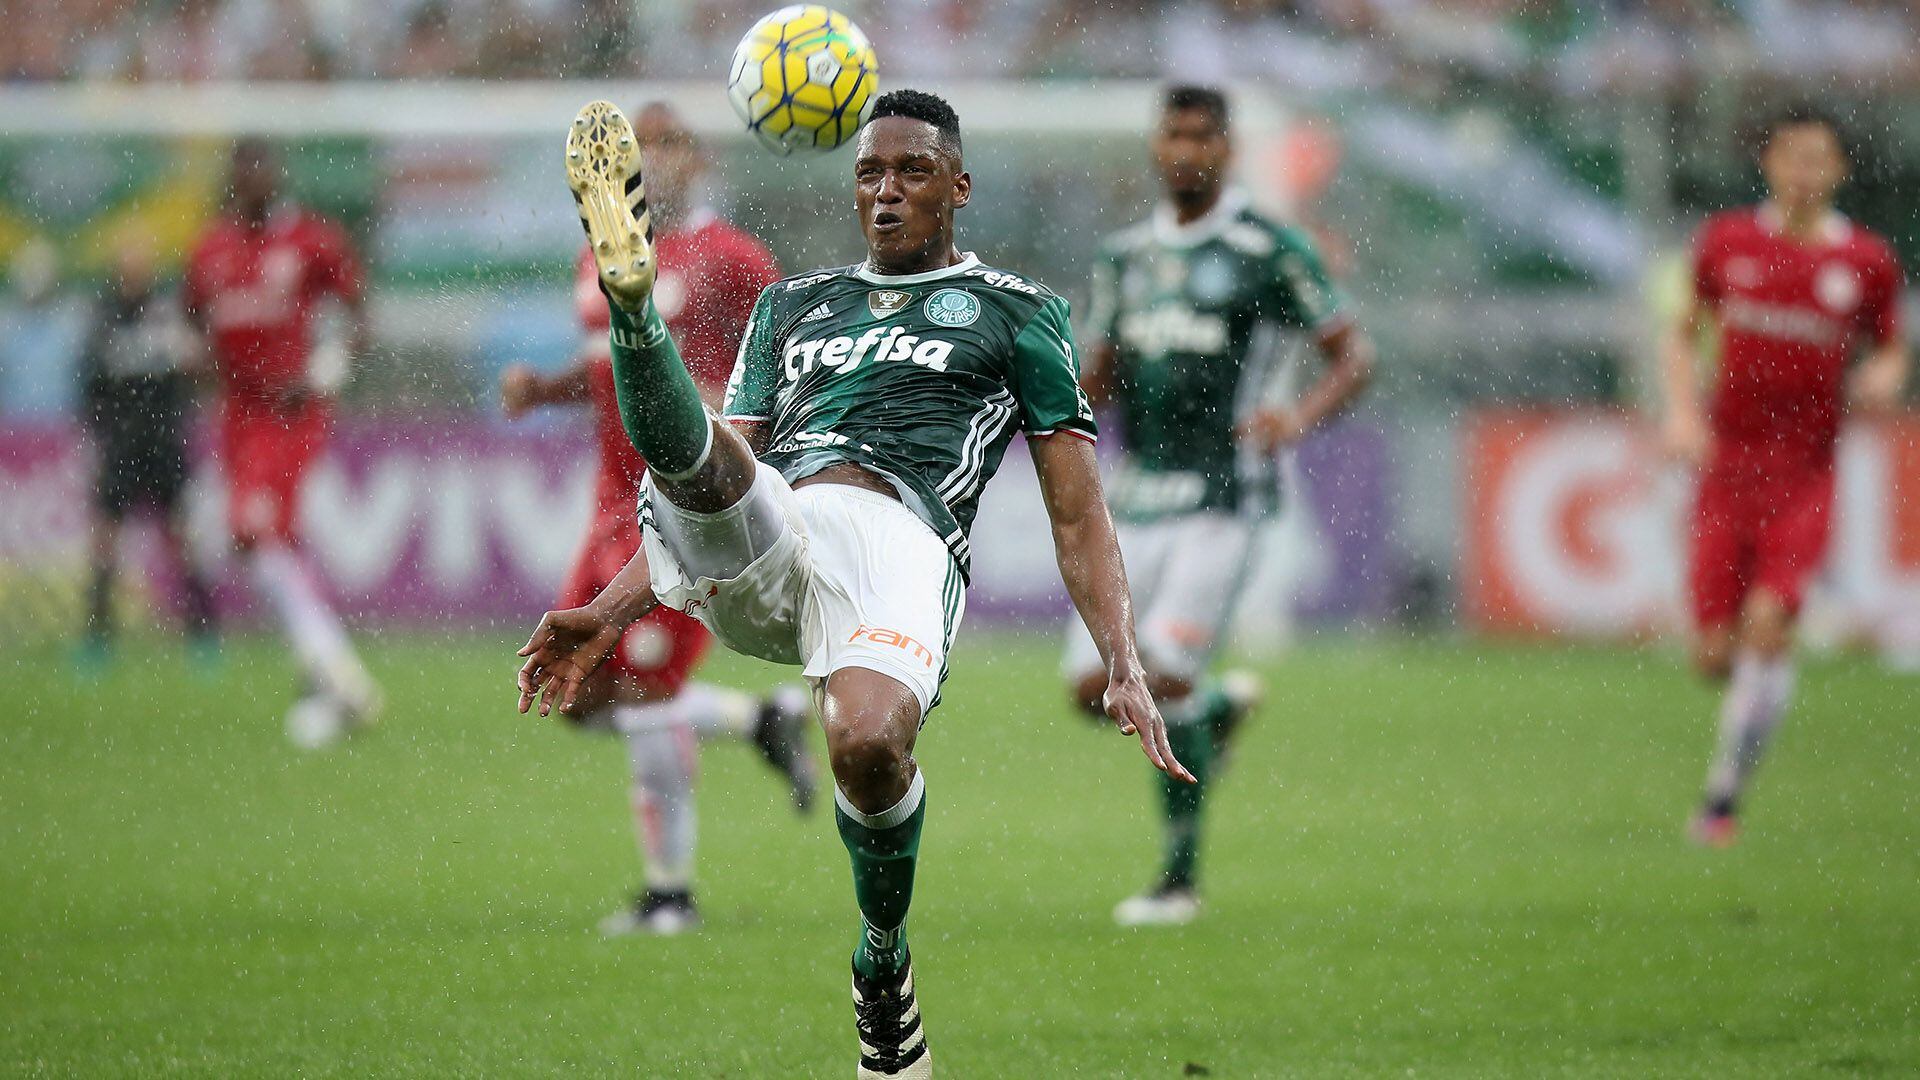 Durante su etapa con Palmeiras, Yerry Mina creció como futbolista y se consolidó como uno de los mejores en Sudamérica - crédito Getty Images